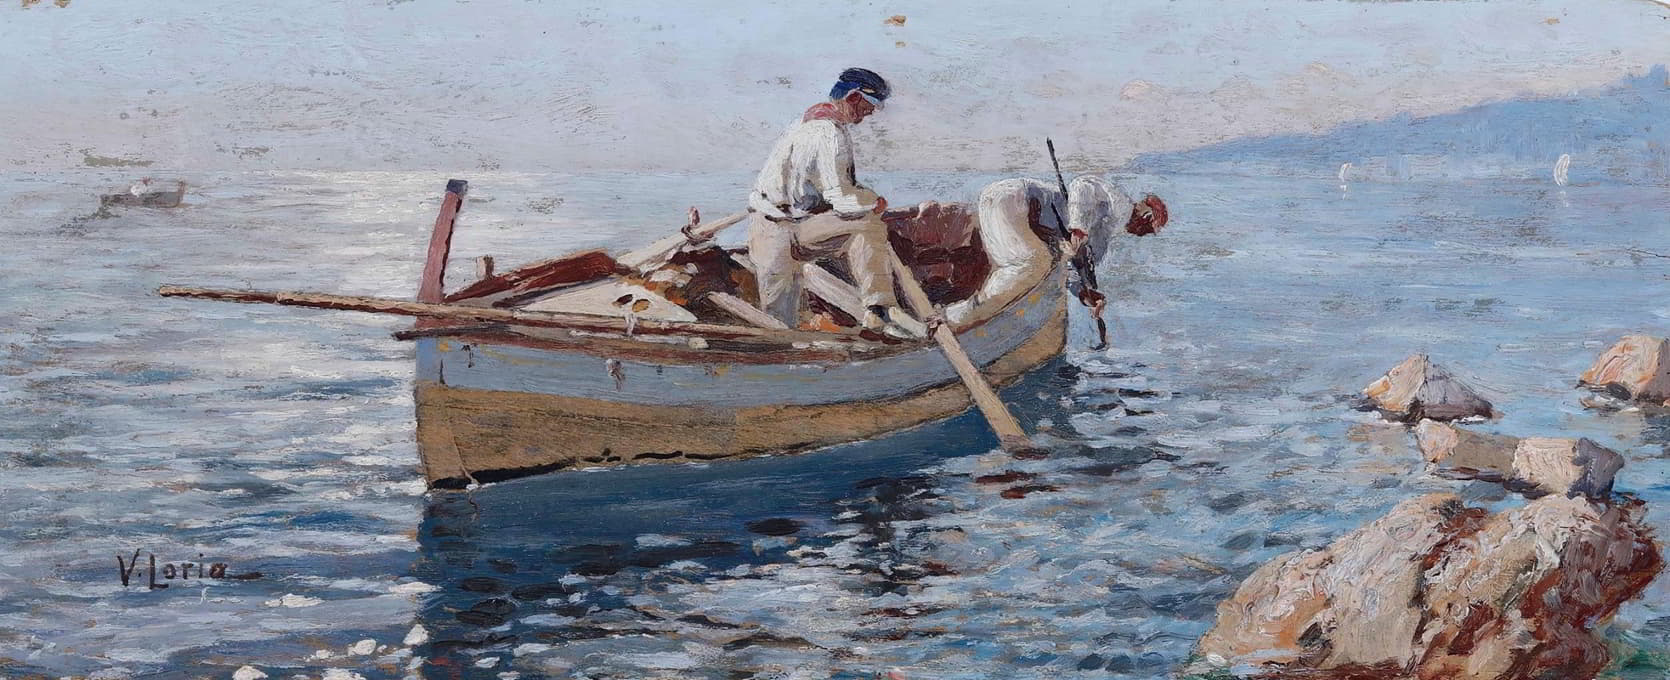 Vincenzo Loria - Pescatori